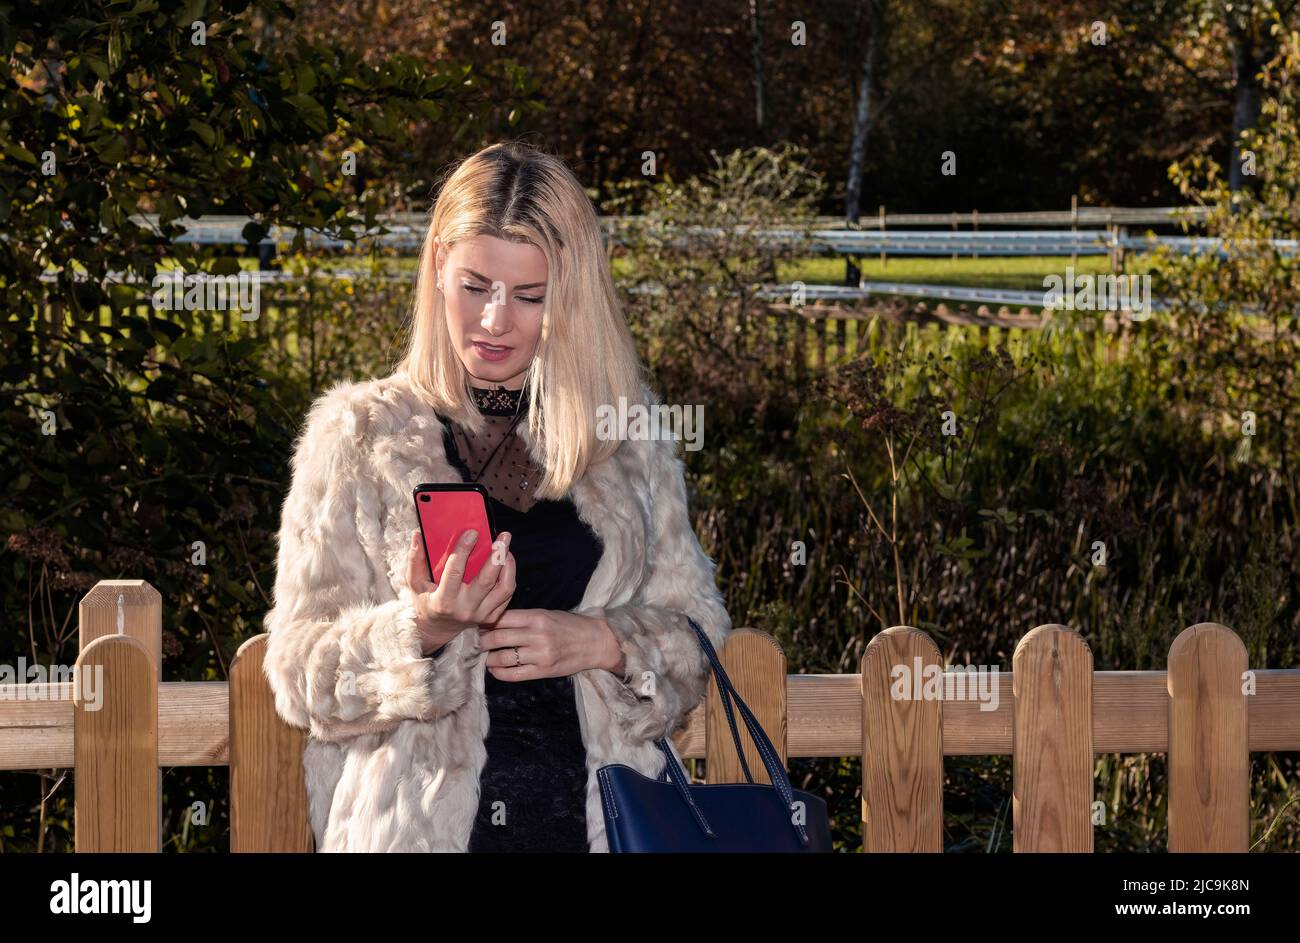 femme blonde regardant un mobile rouge dans un parc, vêtue d'un manteau blanc Banque D'Images